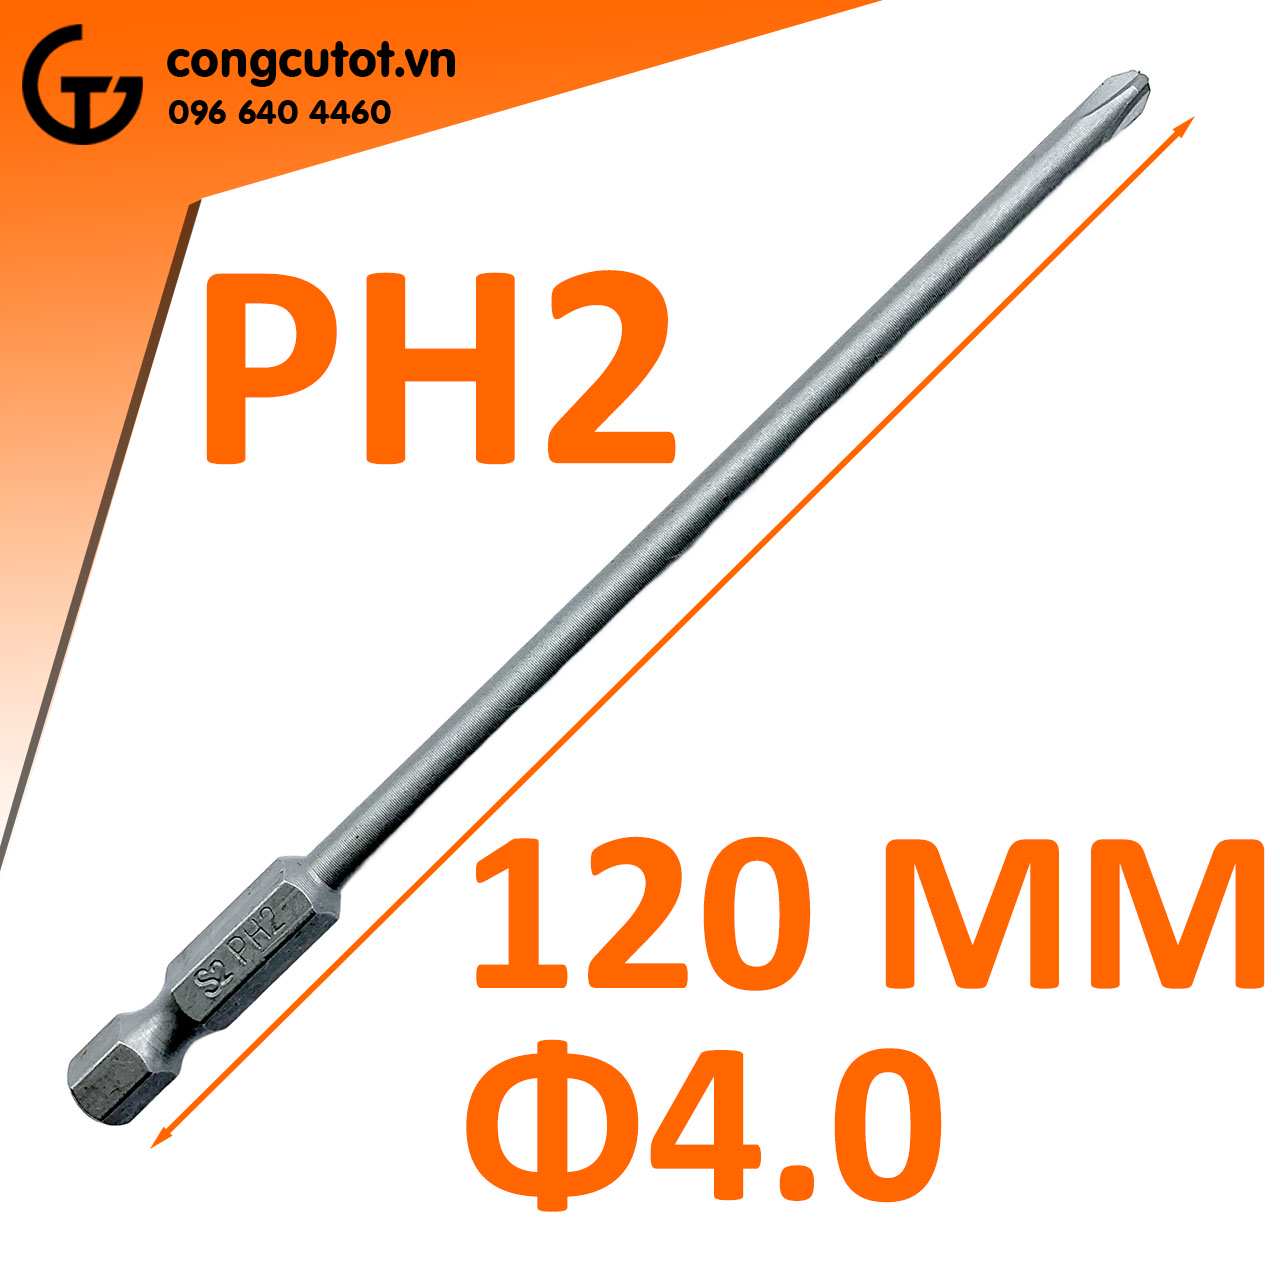 Đầu bắt vít 4 cạnh PH2 Φ4.0 dài 120mm chuôi lục thép S2 là một sản phẩm chất lượng cao